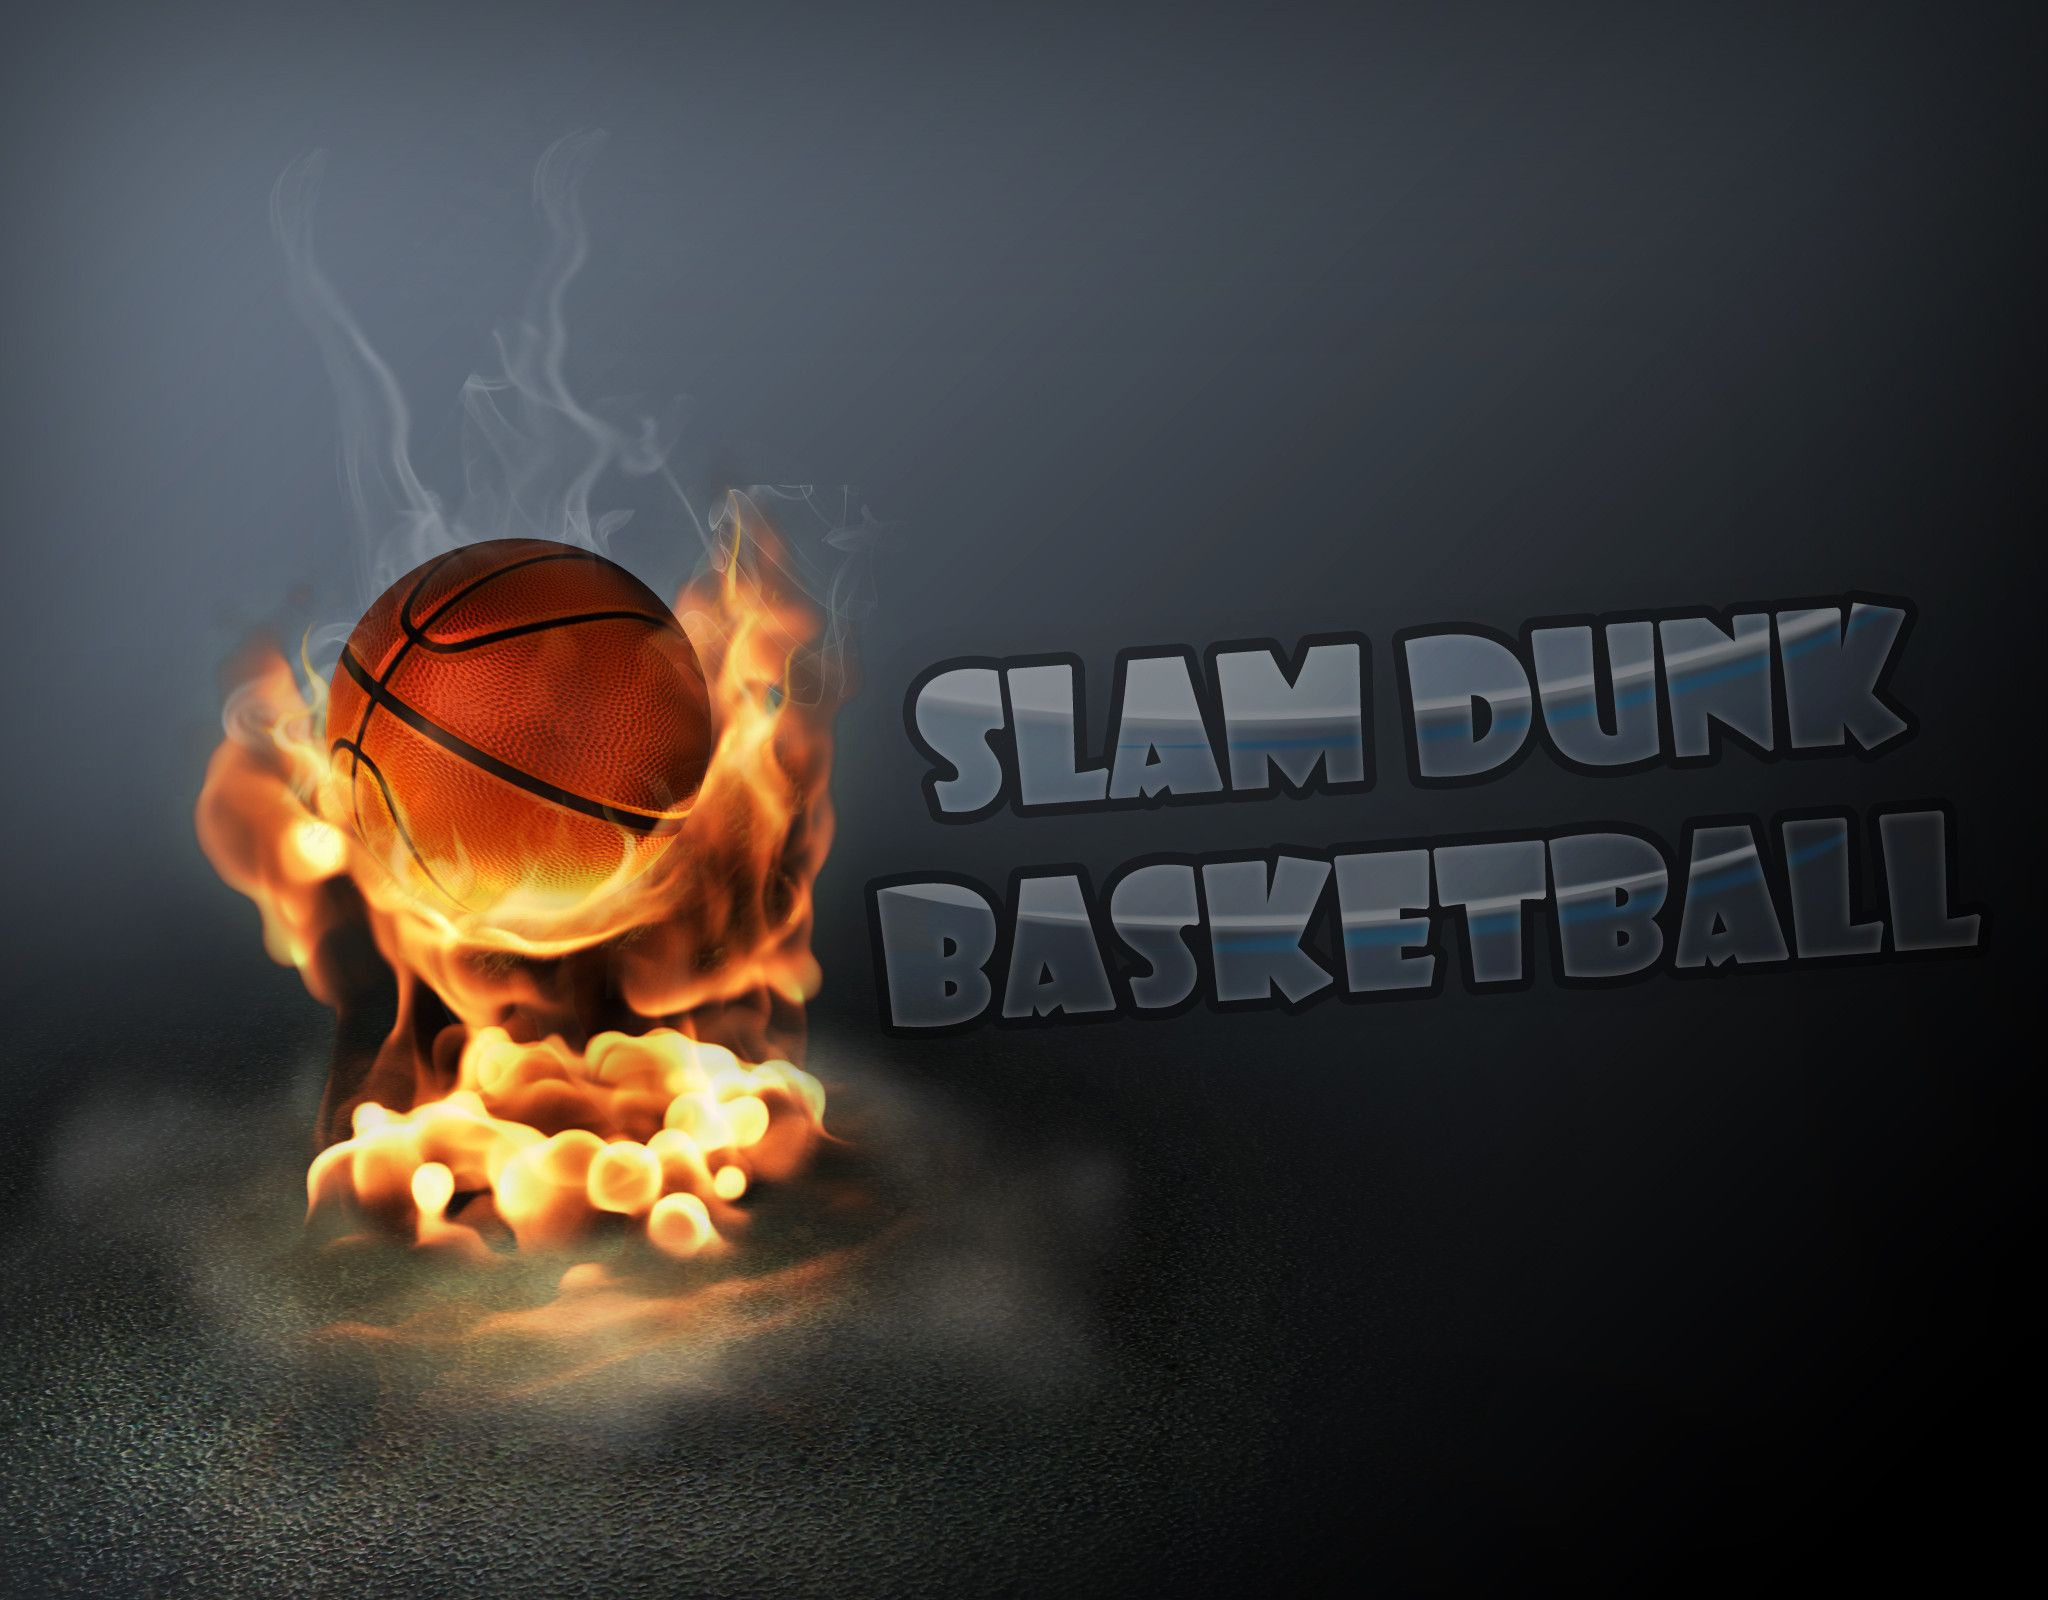 Fire Slam Dunk Basketball Wallpaper Picture 2 Wallpaper